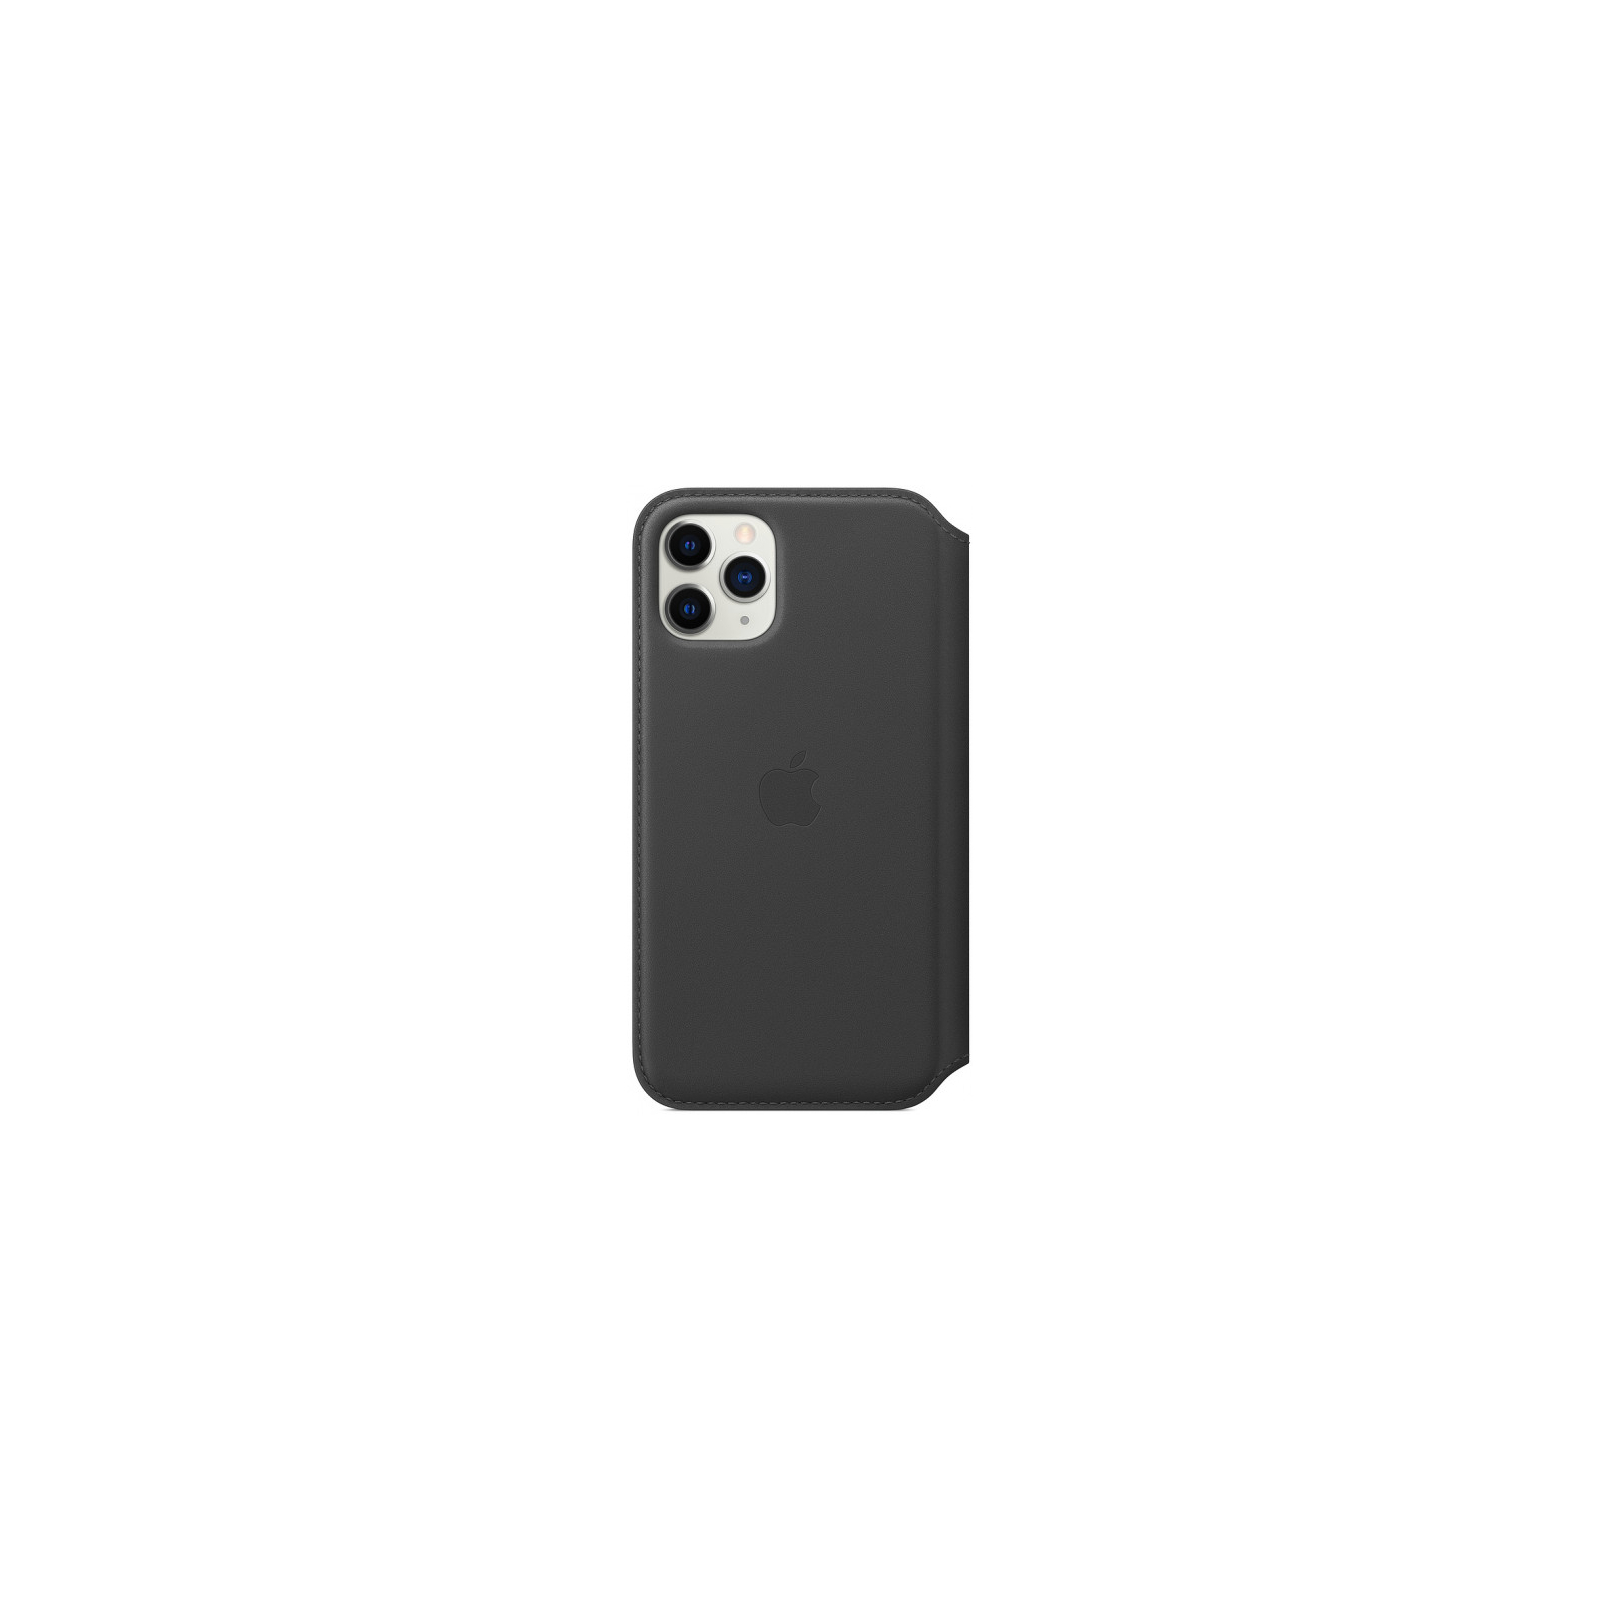 Чехол для мобильного телефона Apple iPhone 11 Pro Leather Folio - Black (MX062ZM/A) изображение 2